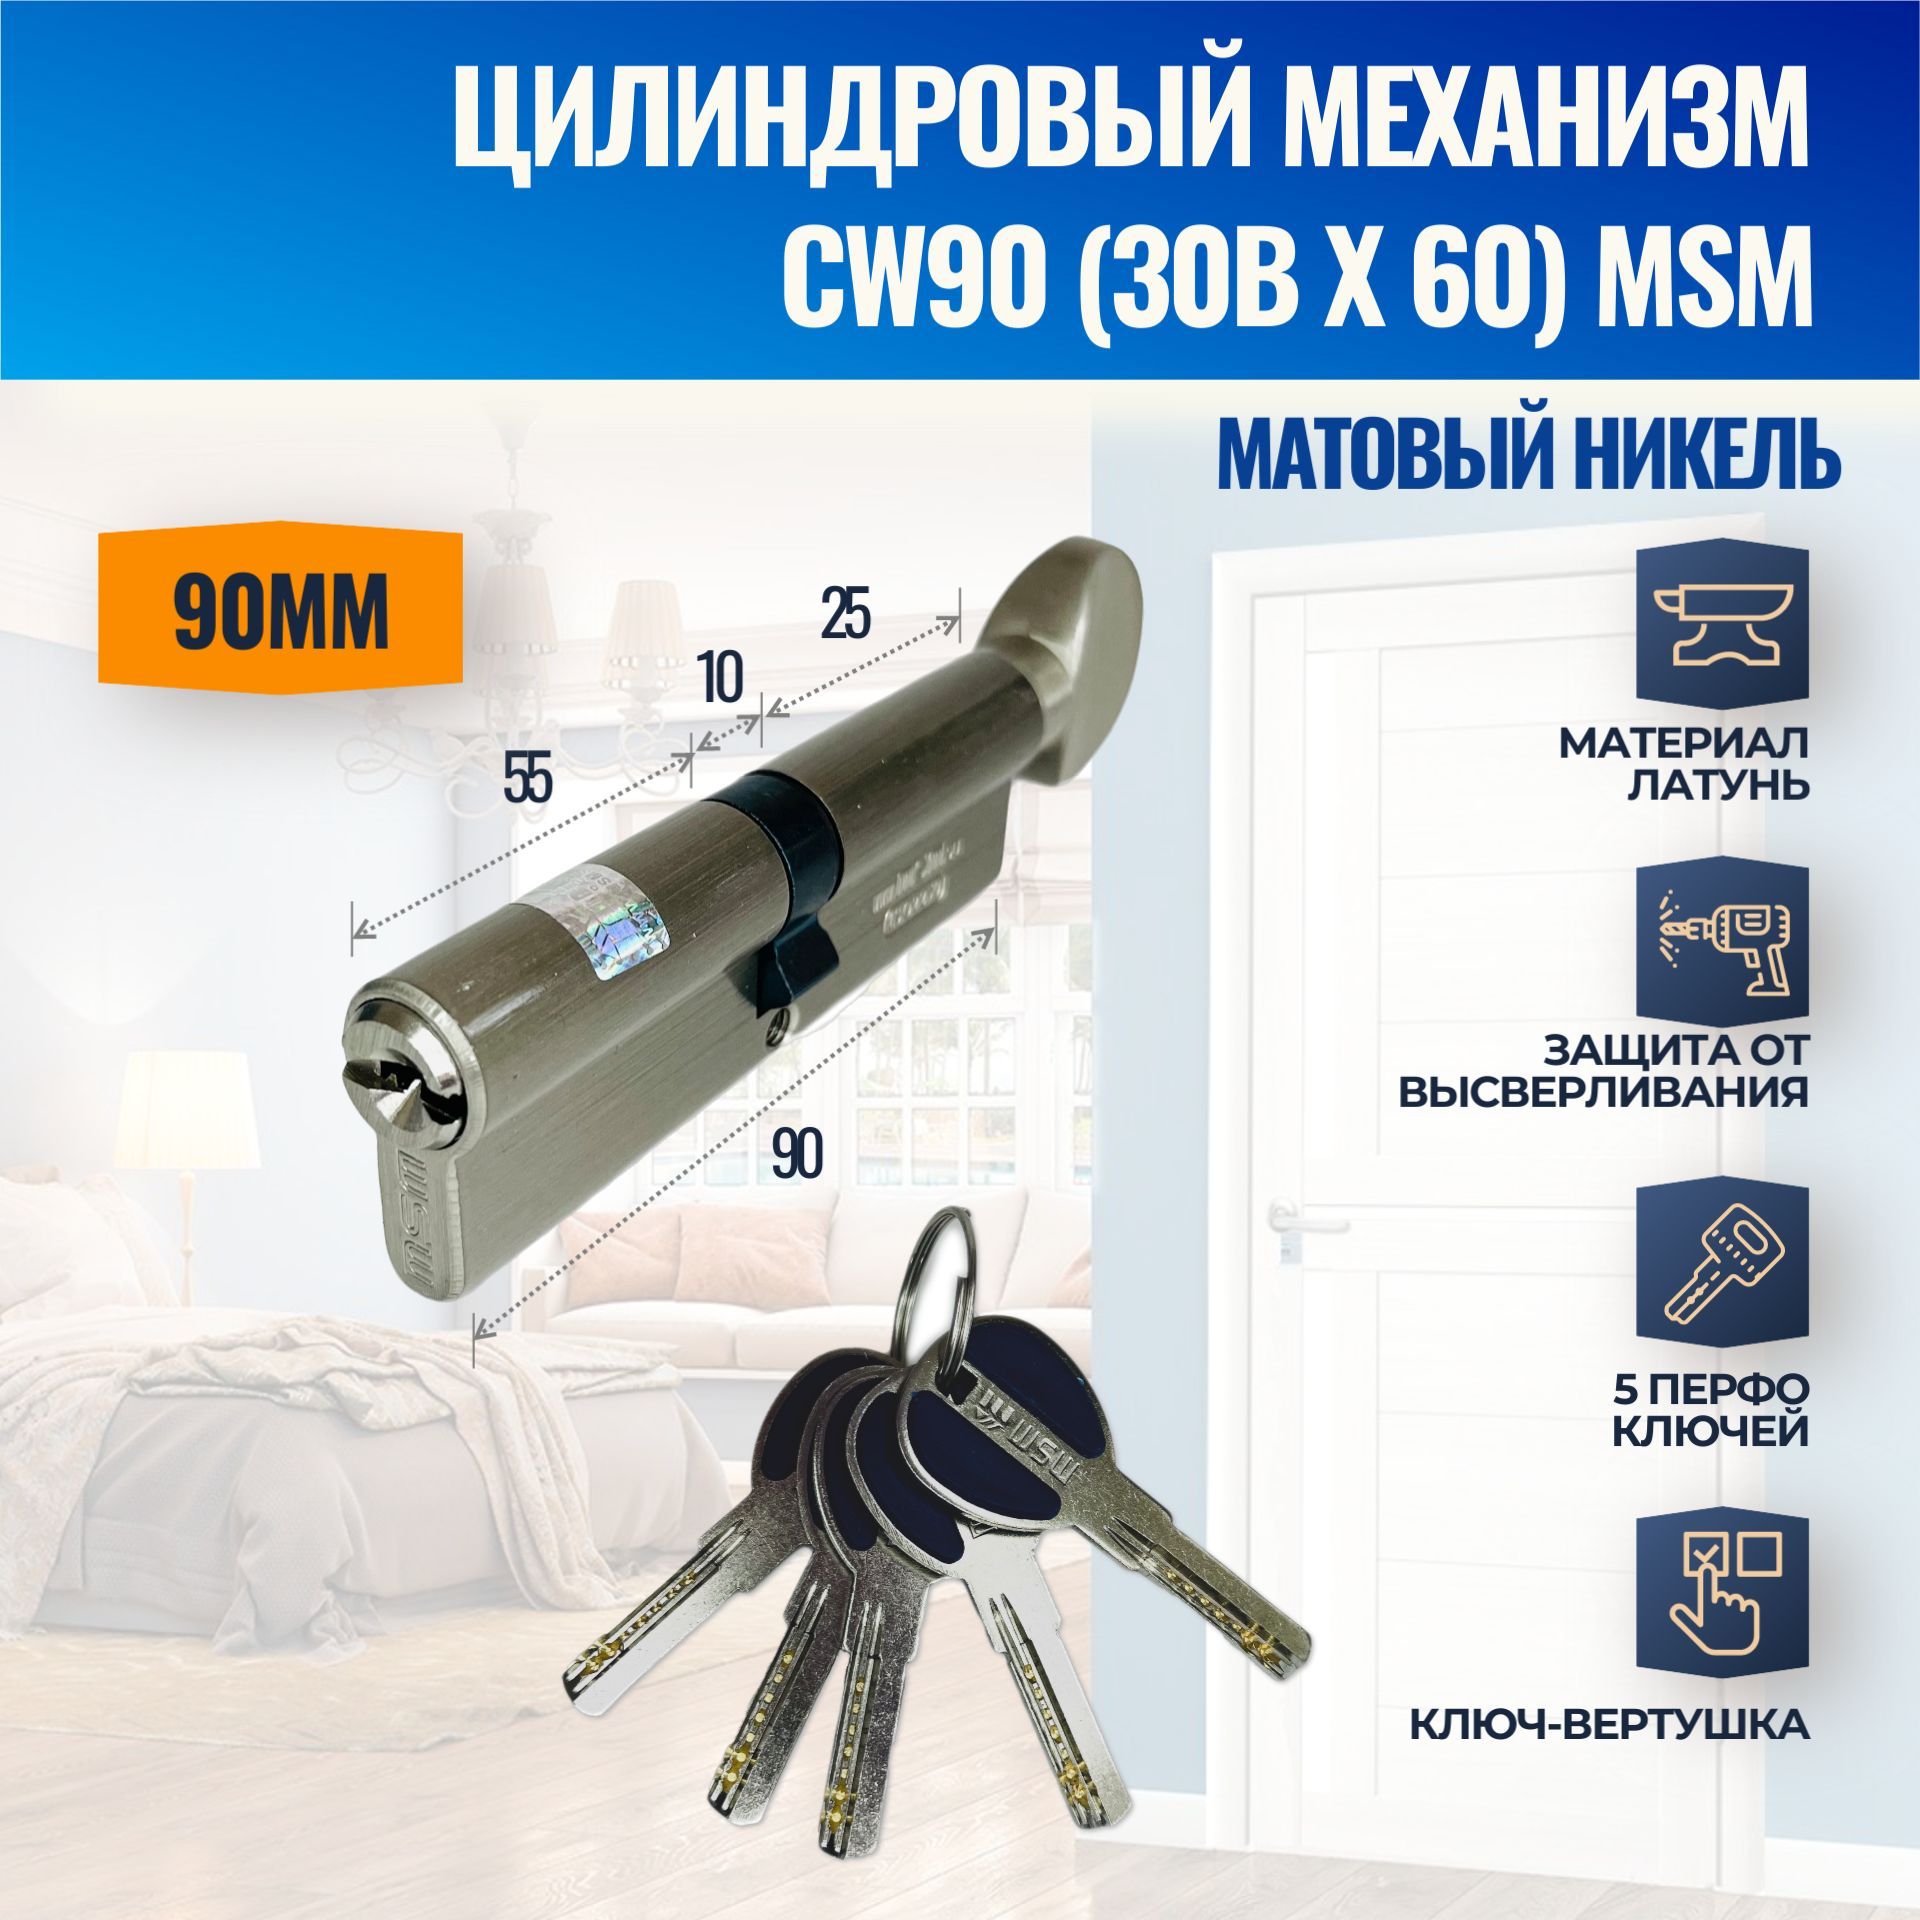 ЦилиндровыймеханизмCW90mm(30Bх60)SN(Матовыйникель)MSM(личинказамка)перфоключ-вертушка